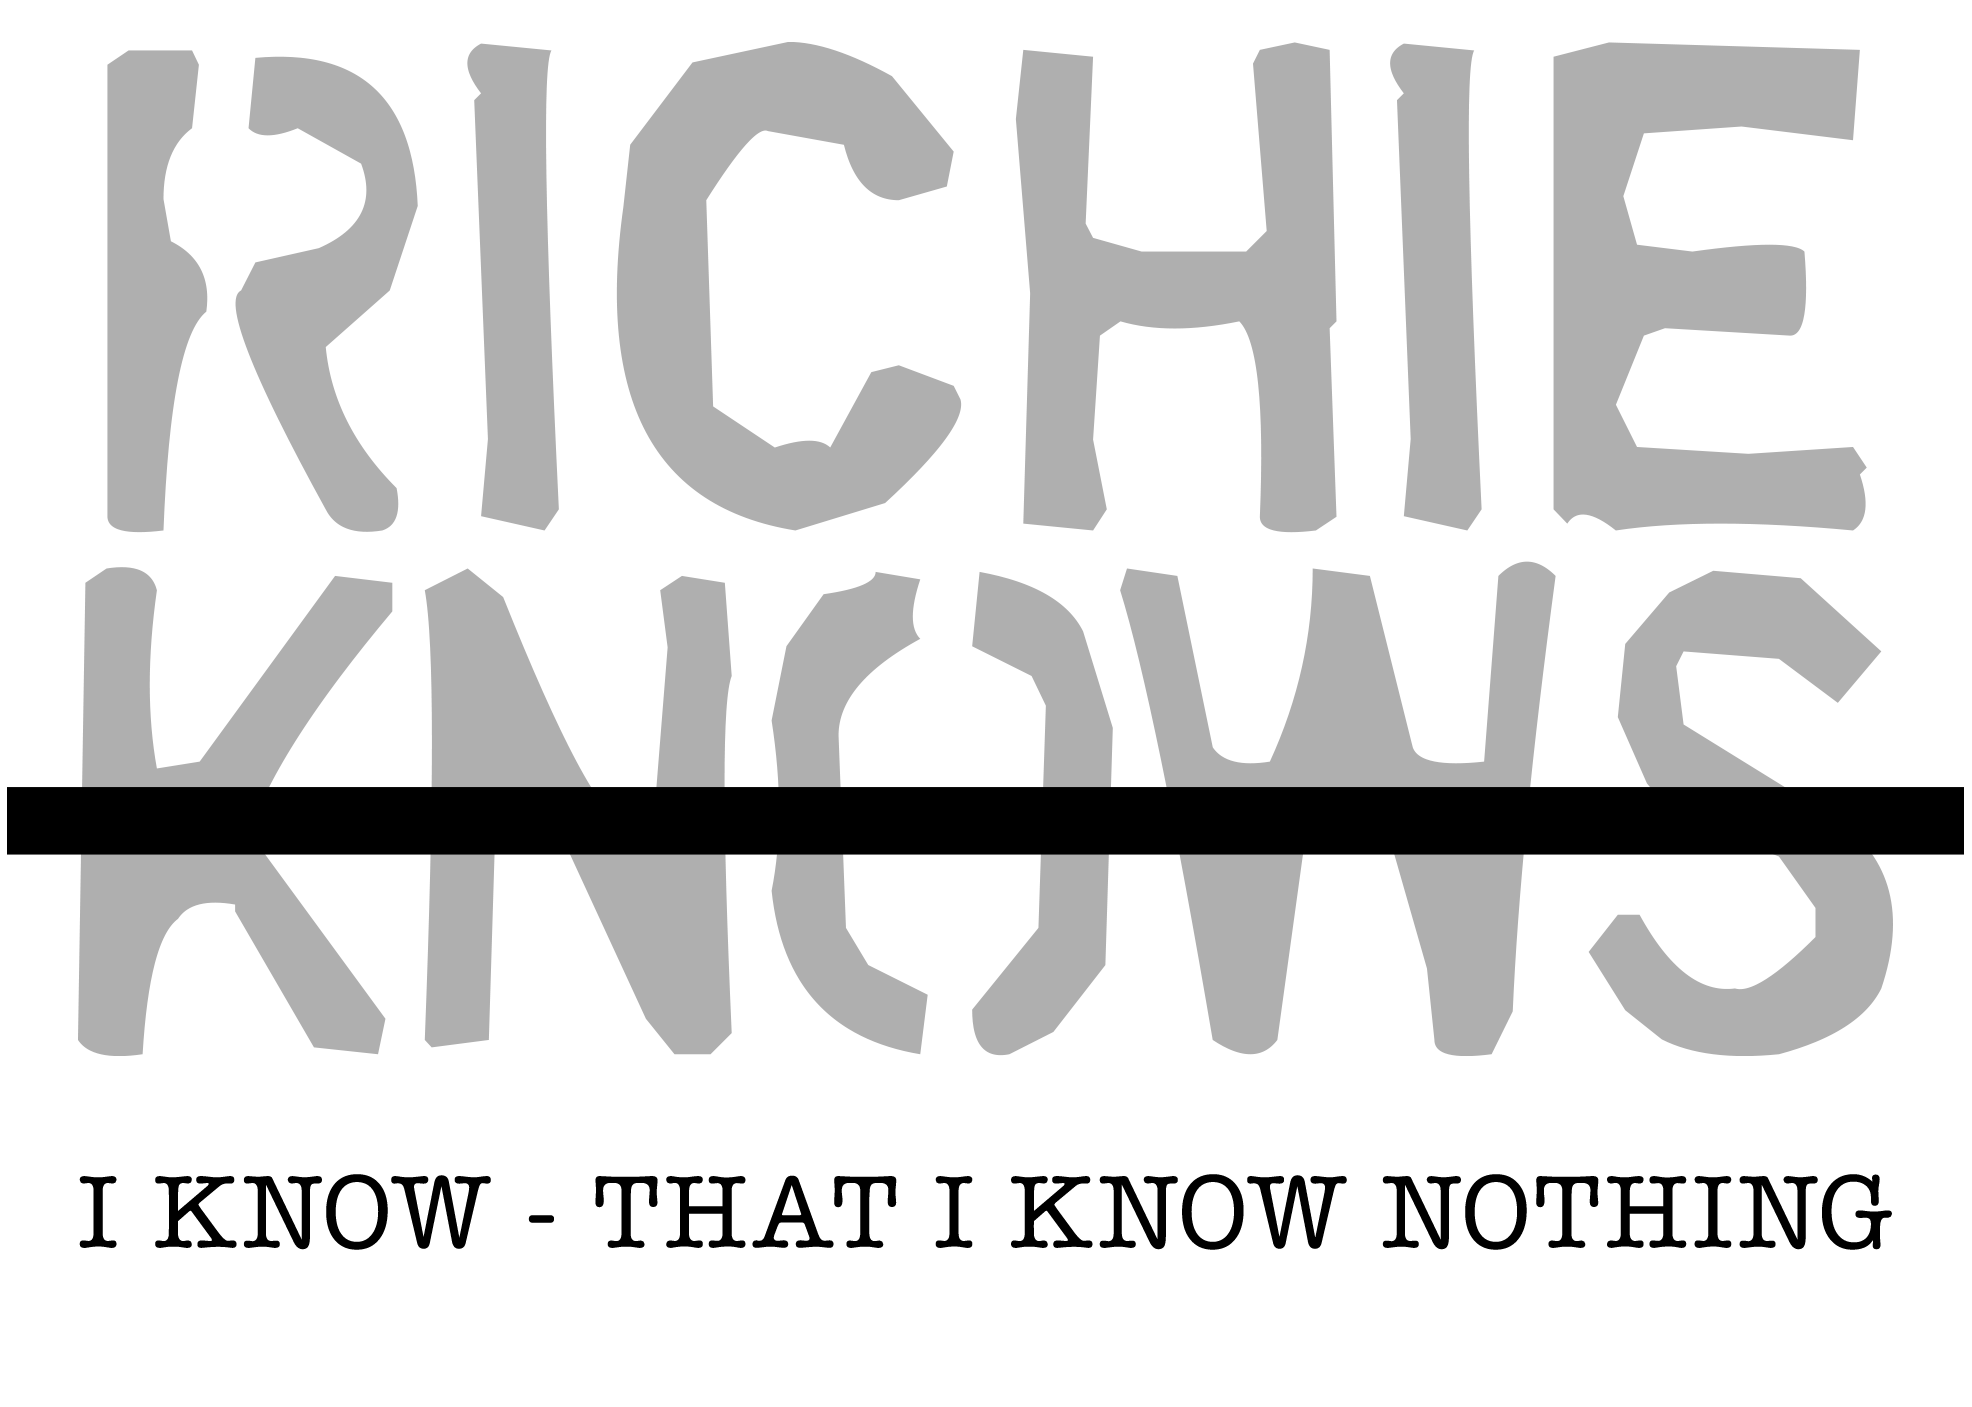 RICHIE KNOWS